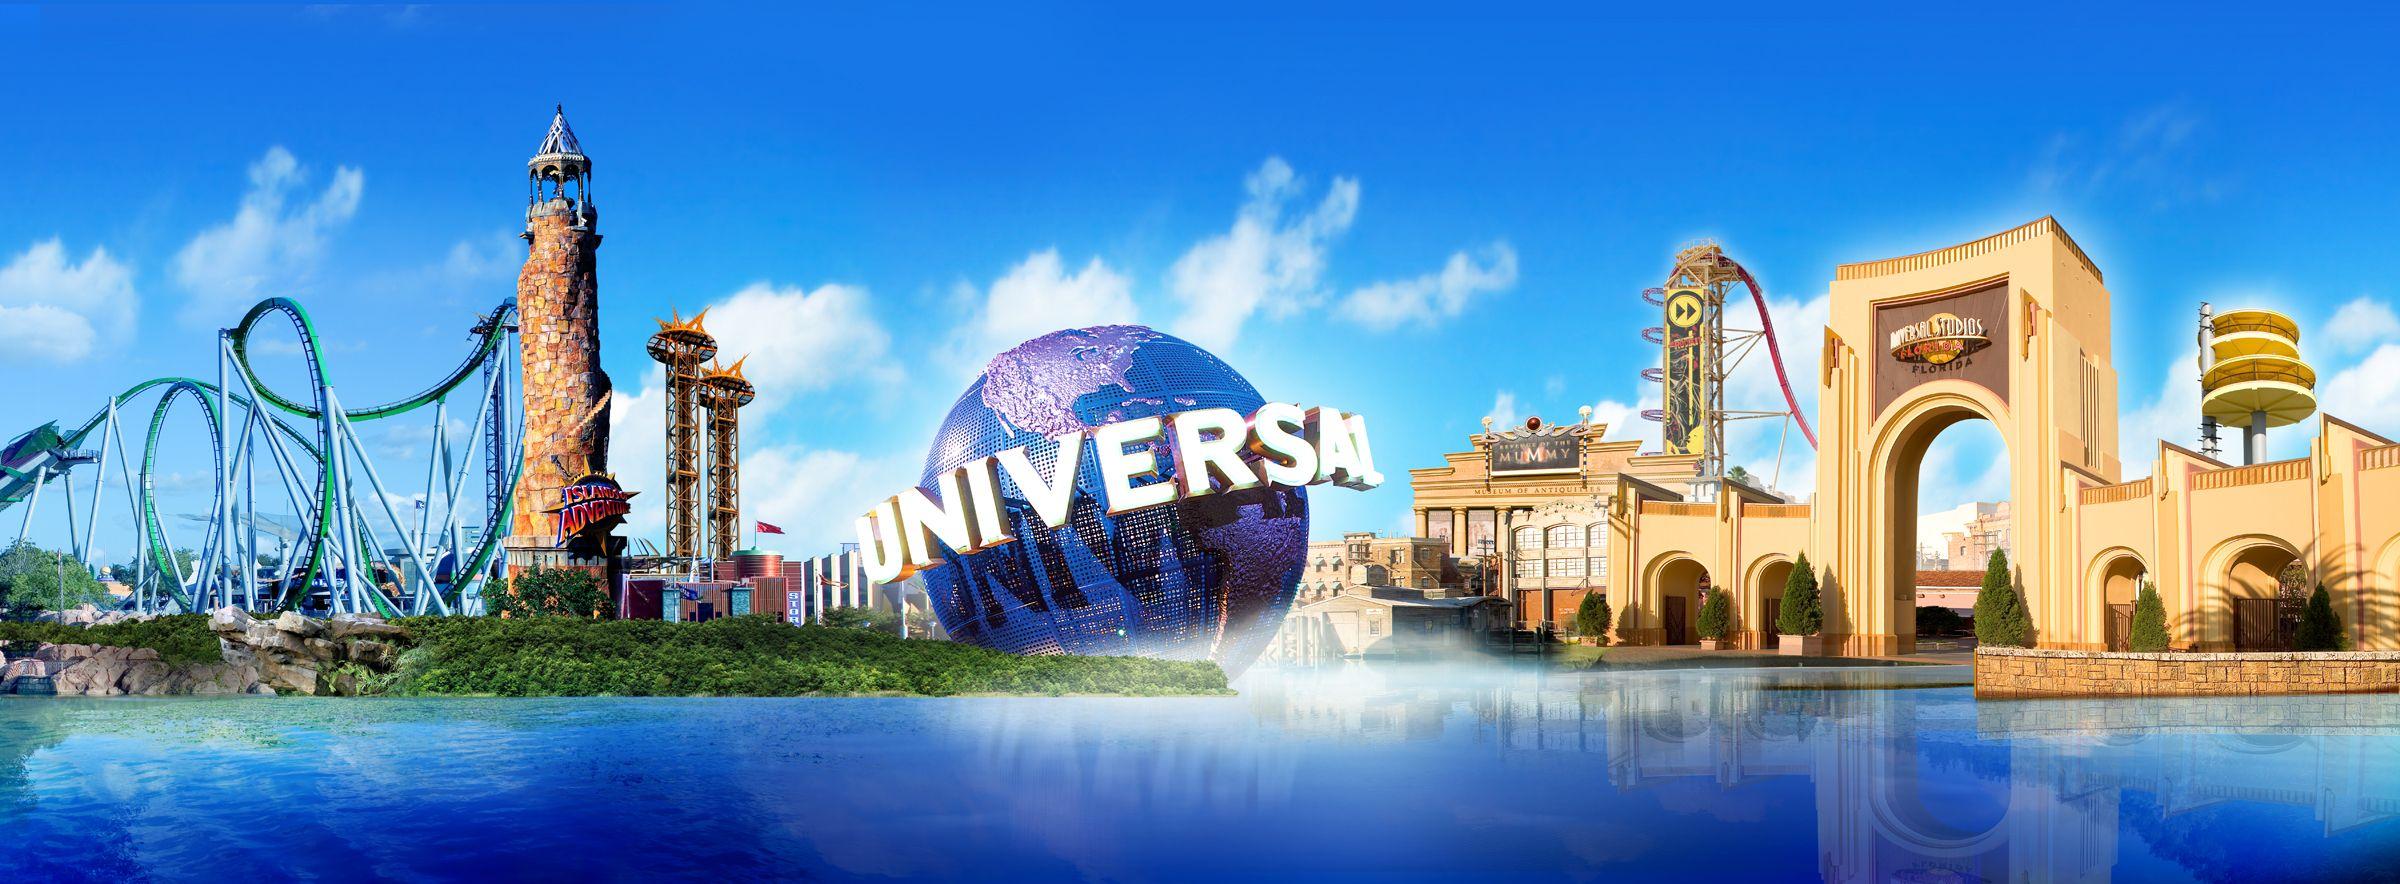 100 Universal Studios Pictures  Wallpaperscom